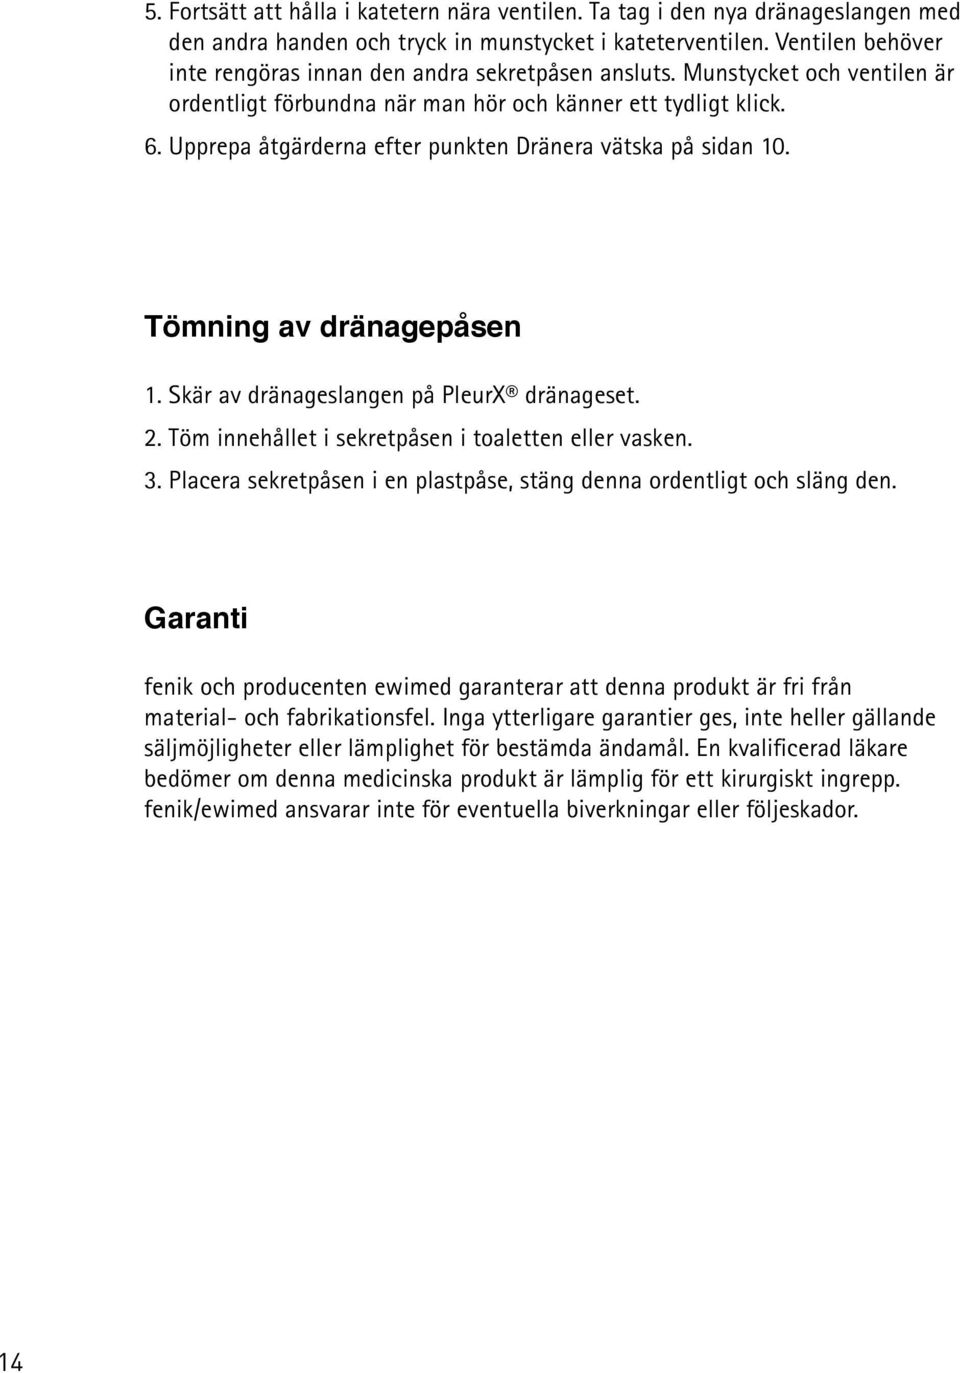 Upprepa åtgärderna efter punkten Dränera vätska på sidan 10. Tömning av dränagepåsen 1. Skär av dränageslangen på PleurX dränageset. 2. Töm innehållet i sekretpåsen i toaletten eller vasken. 3.